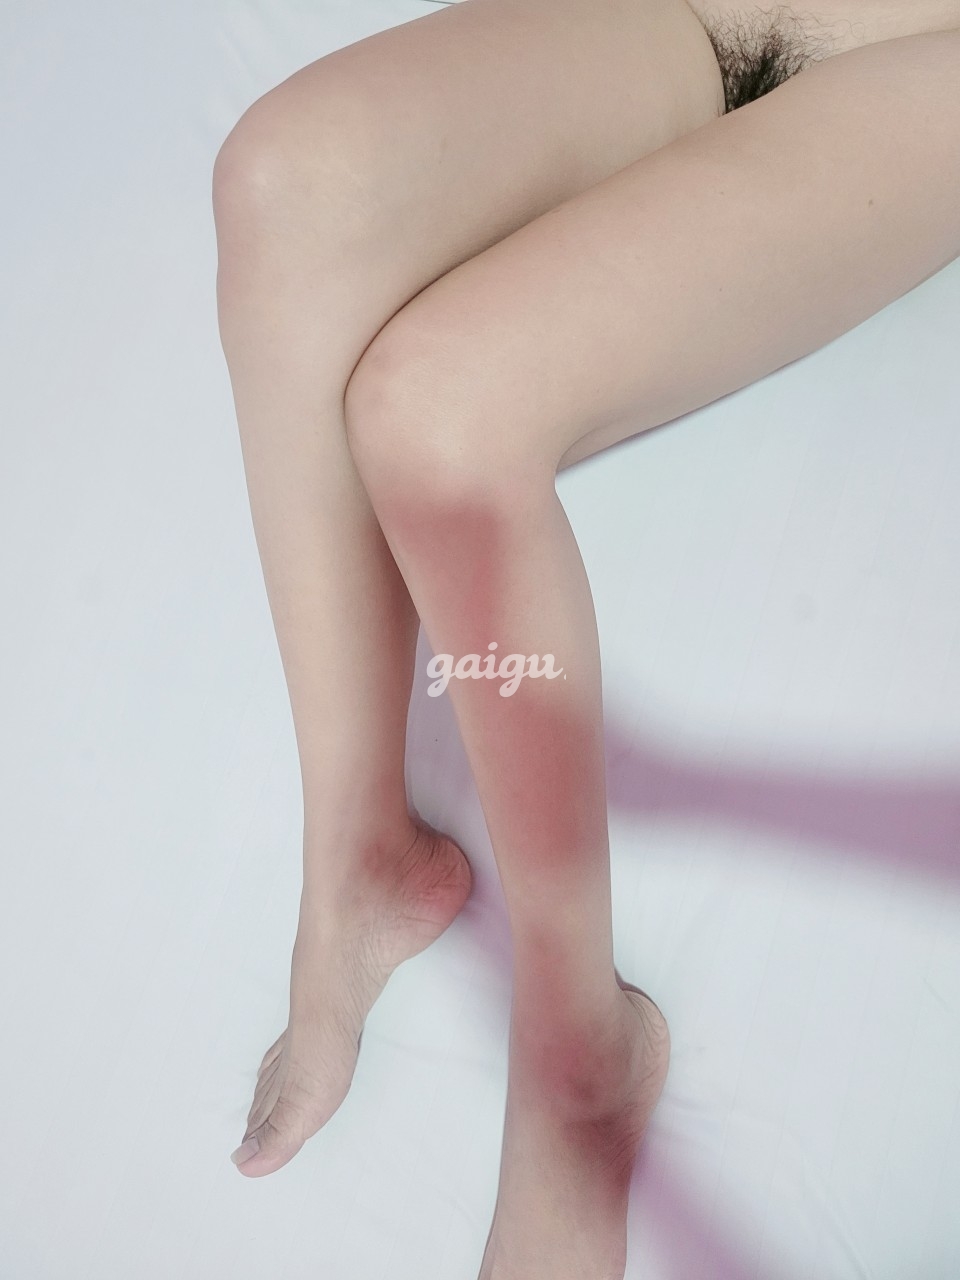 An Quỳnh .hot gir chân dài hình ảnh chân thật 100%